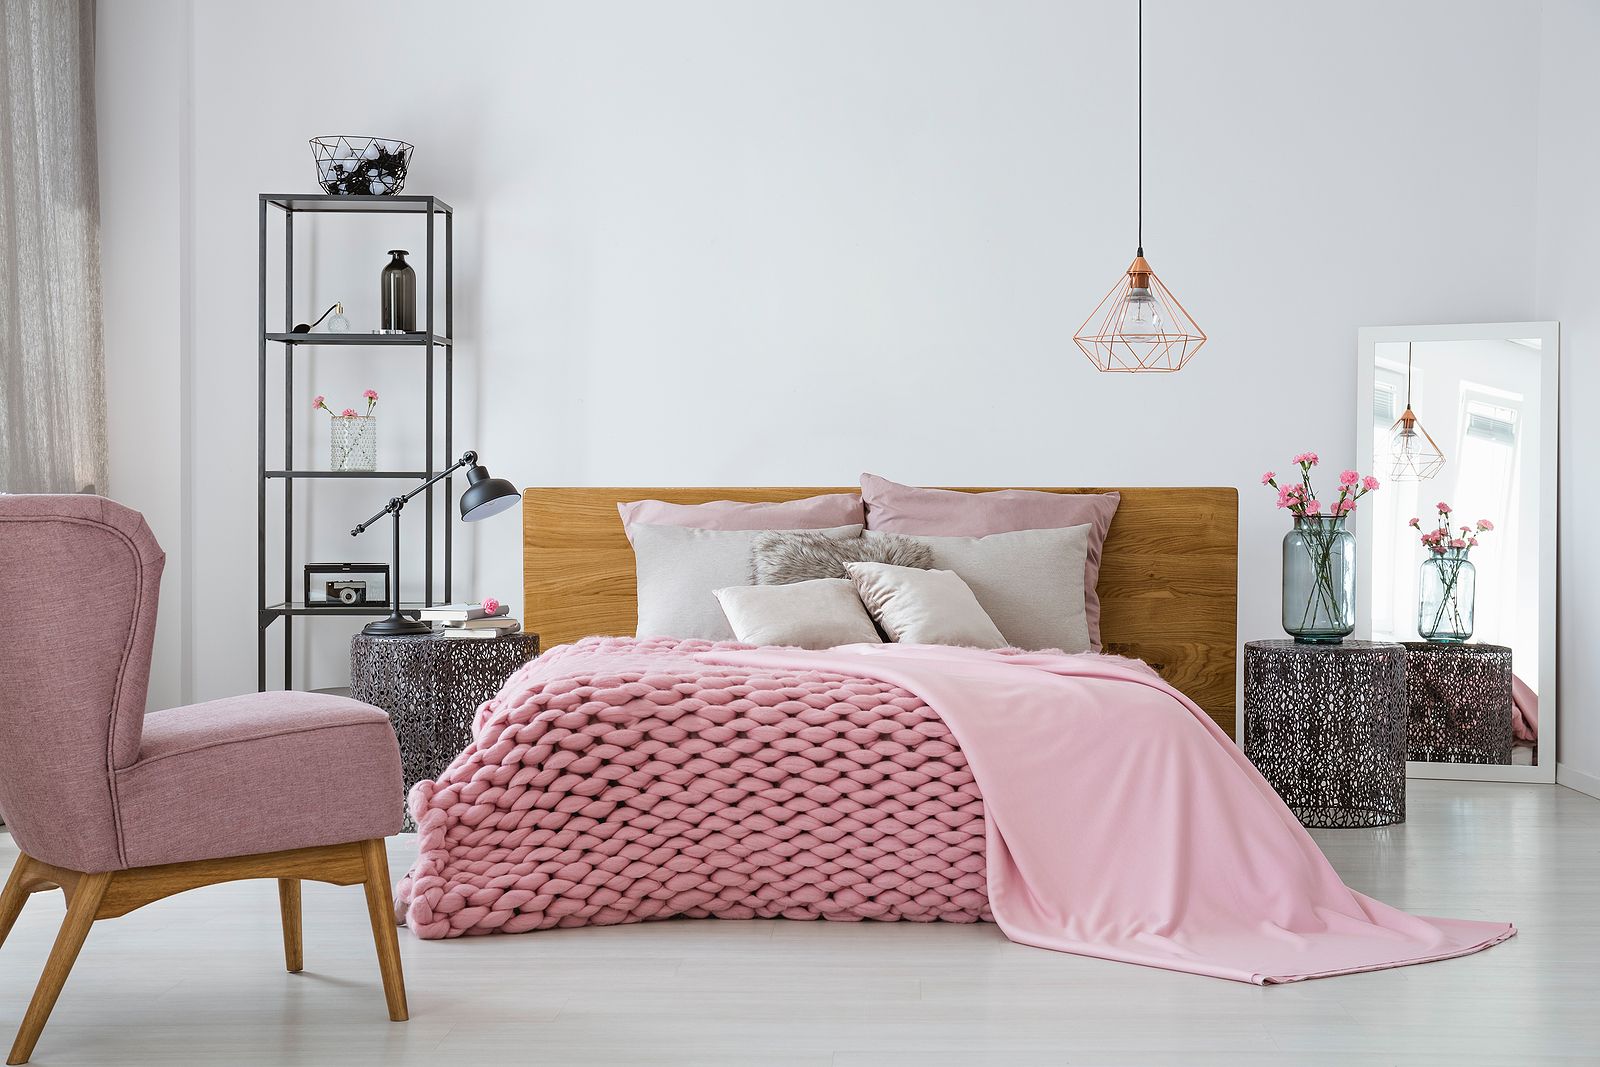 Trucos de los hoteles para hacer una cama perfecta Foto: bigstock